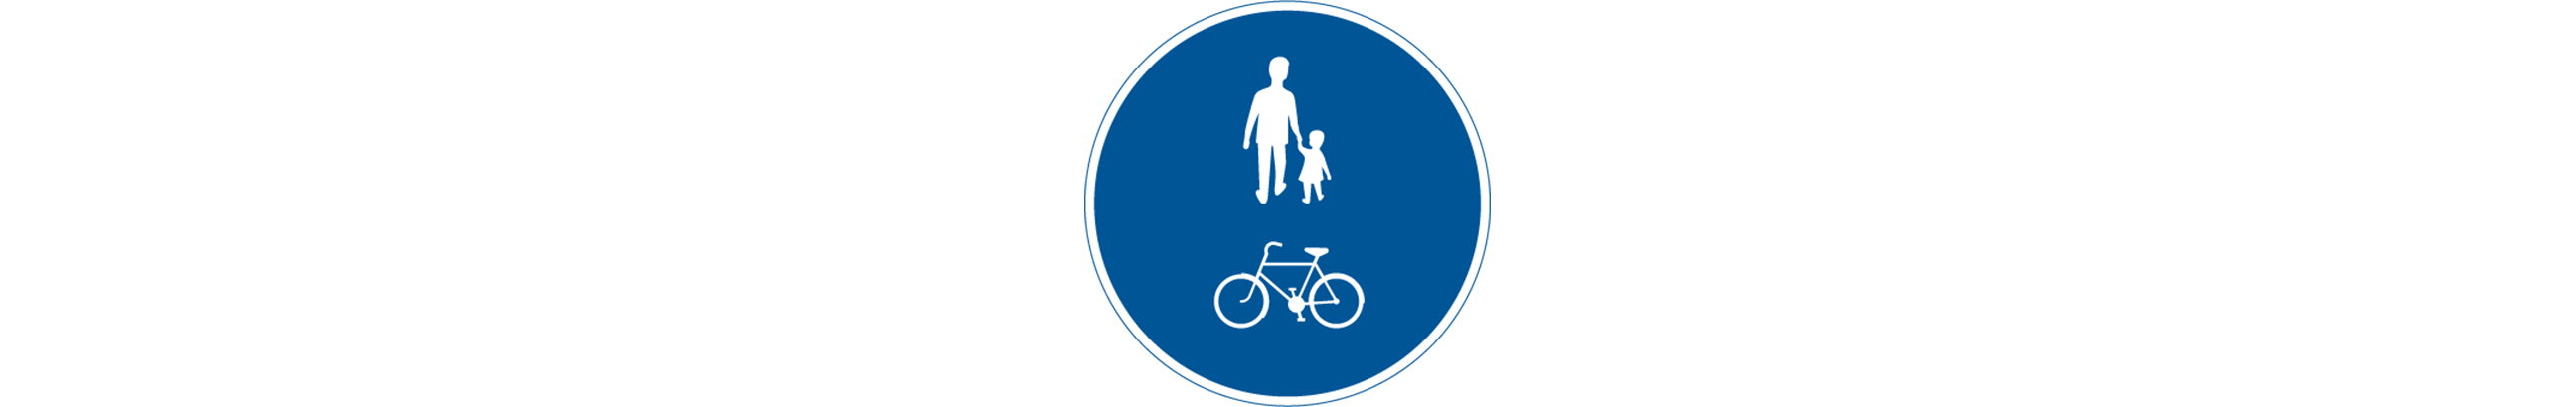 vägmärke för gång- och cykelbana